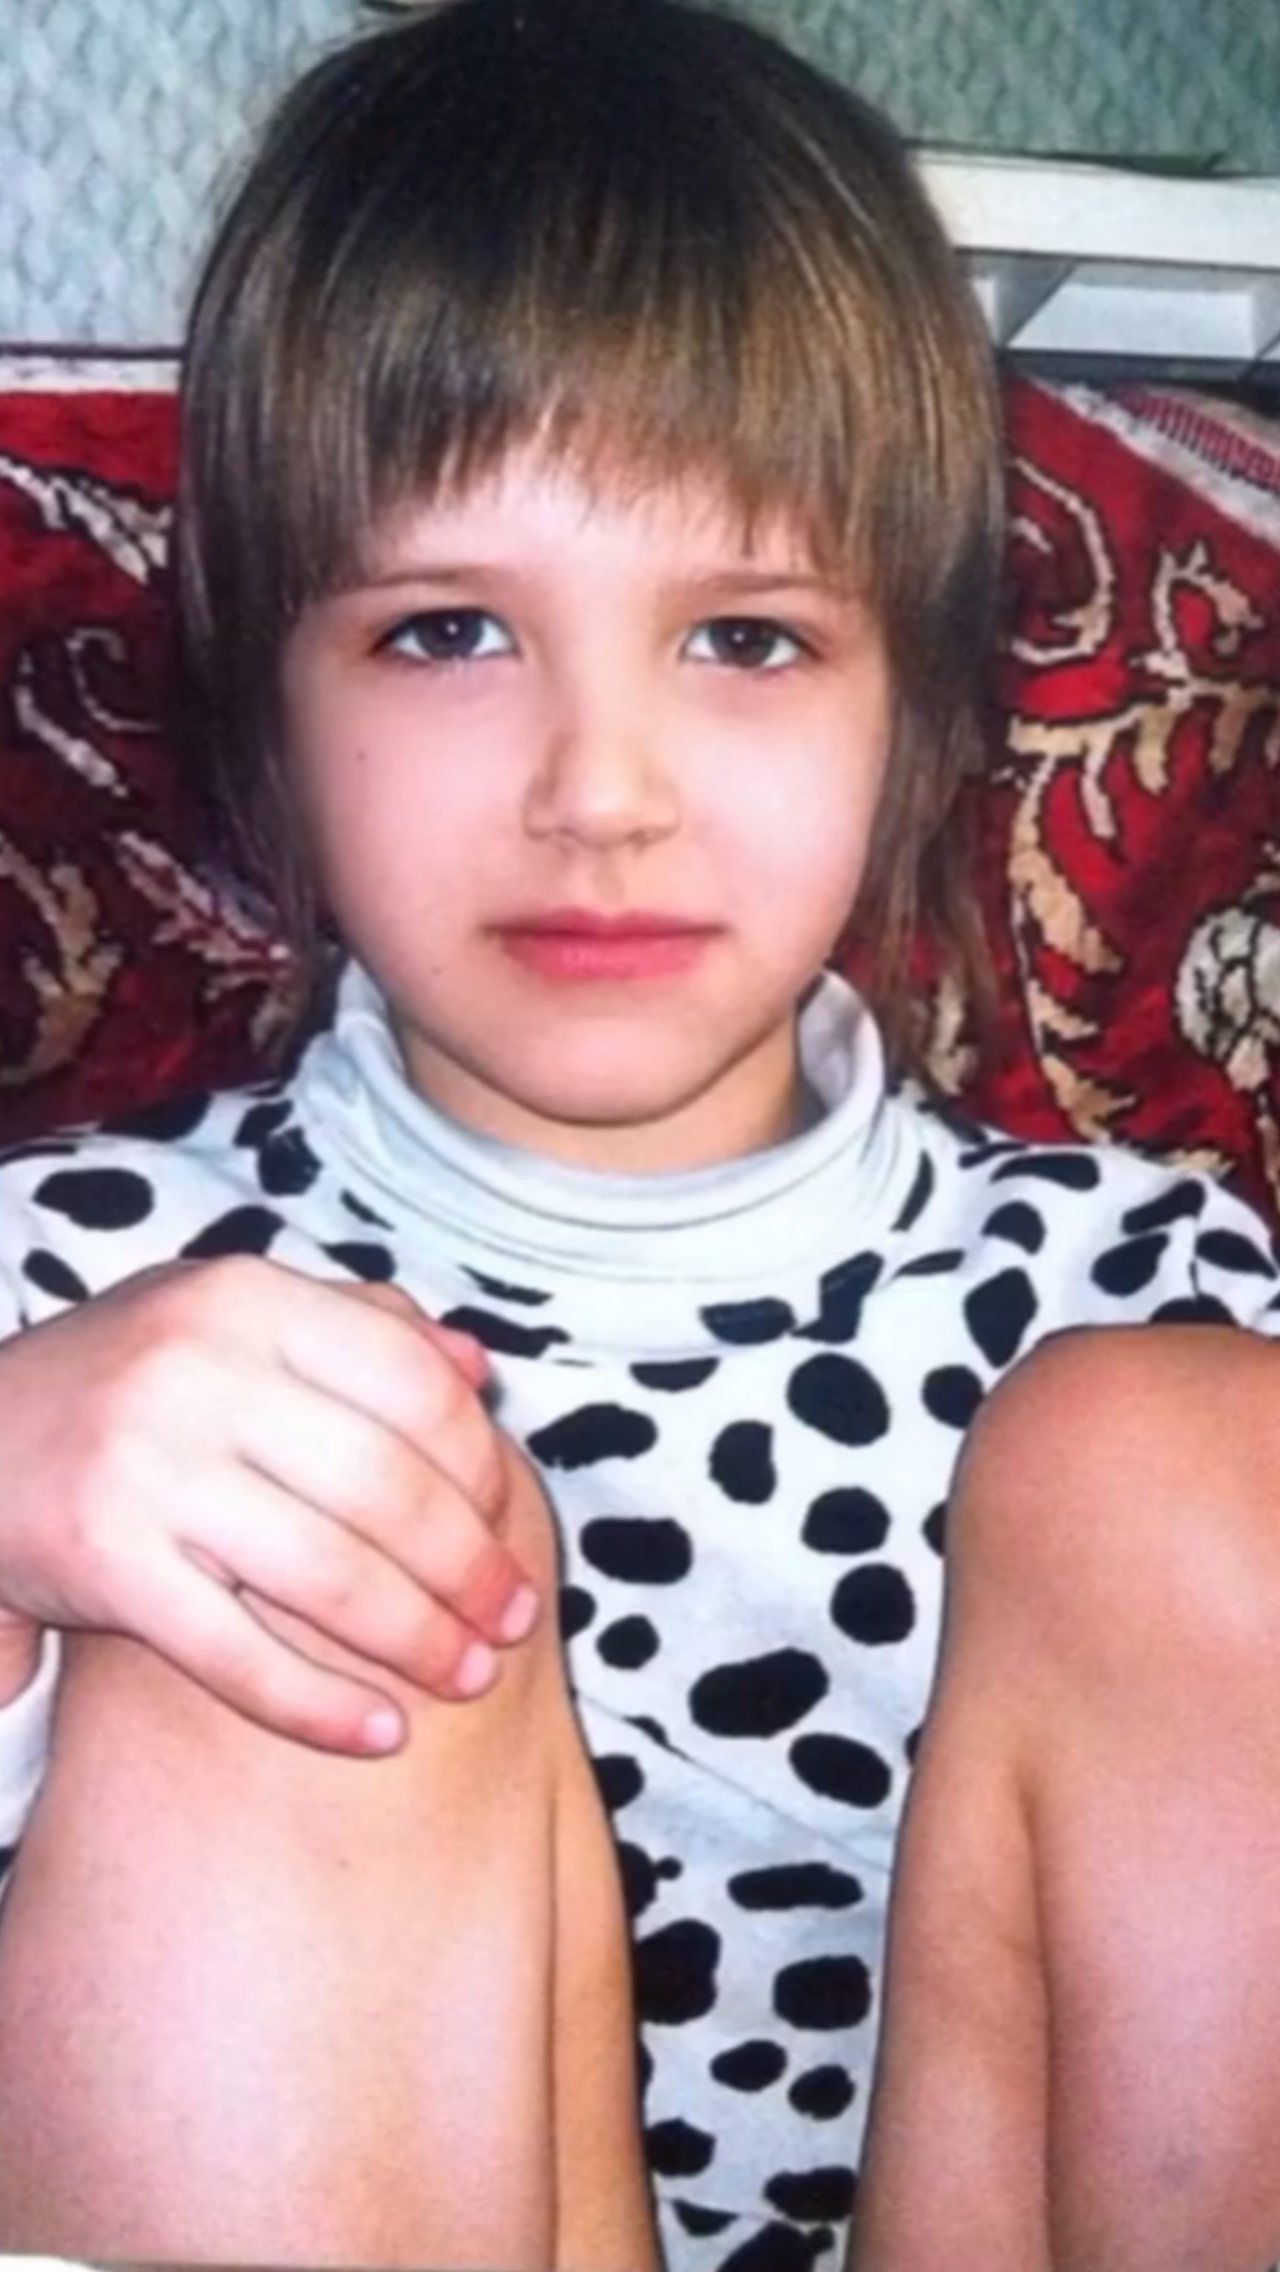 «Похожа сейчас на себя в детстве?» – спросила у подписчиков Солдатова под видео с детскими фото.